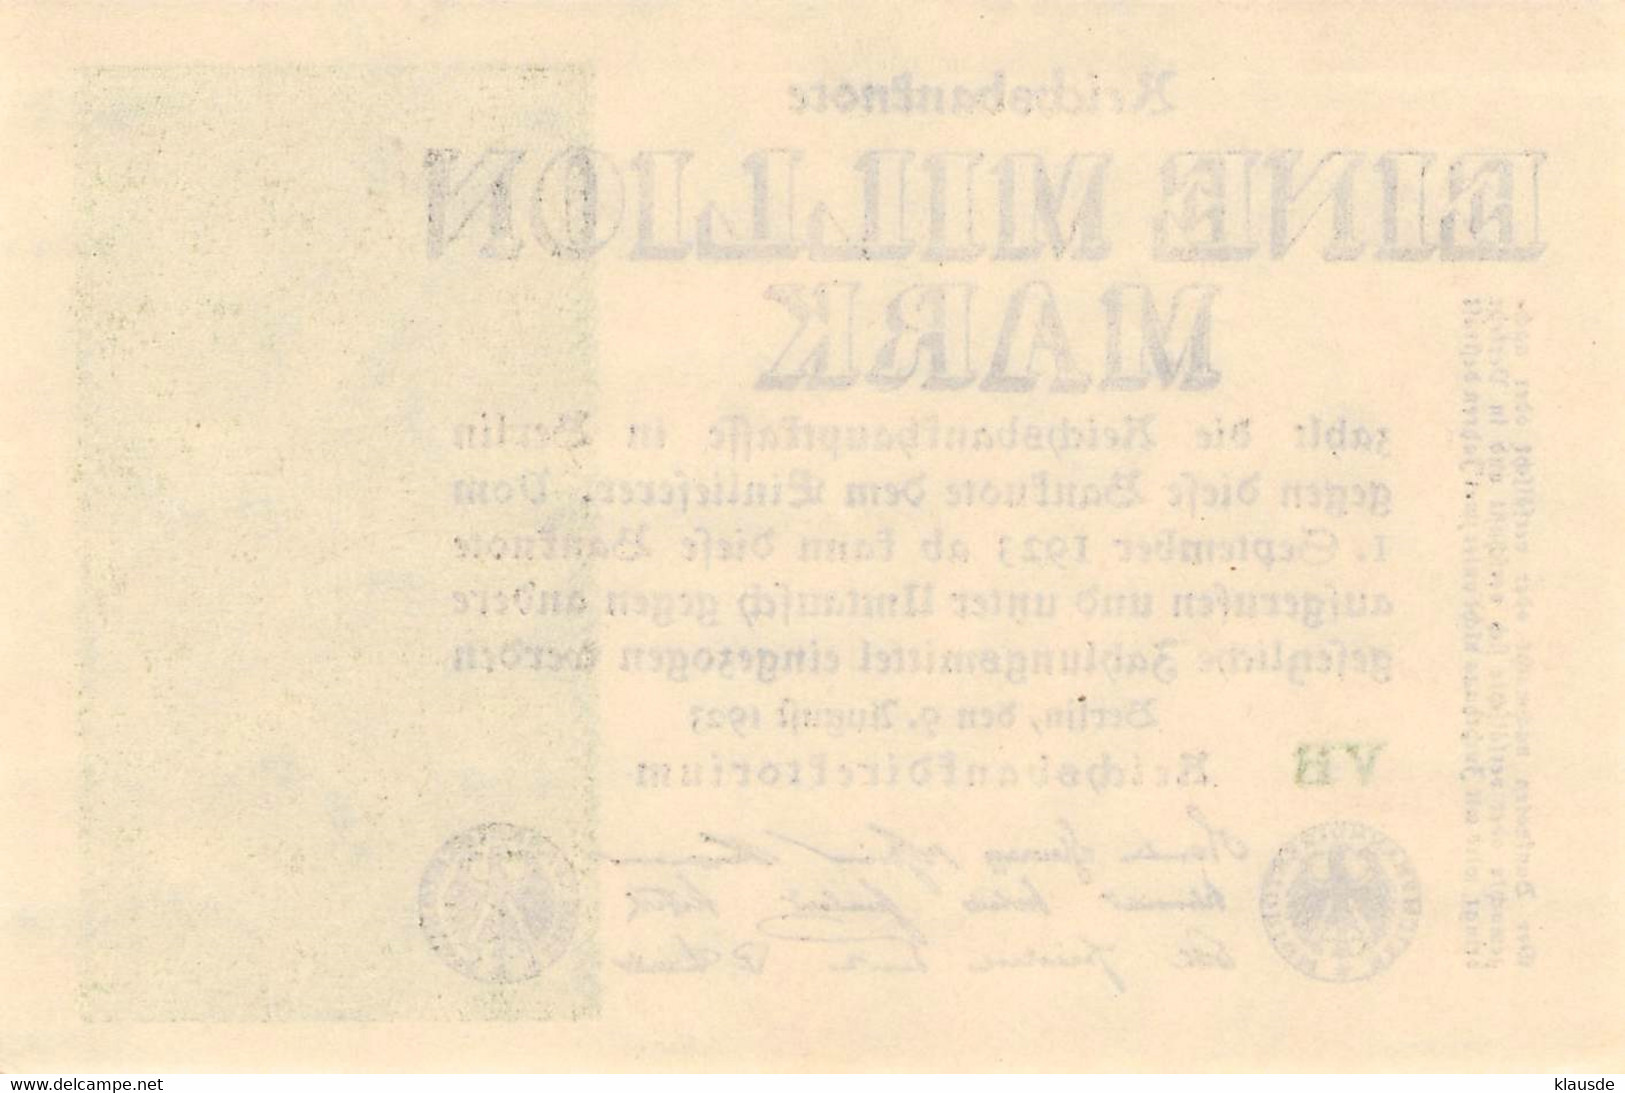 1 Mio Mark Reichsbanknote 1923 AU/EF (II) - 1 Mio. Mark